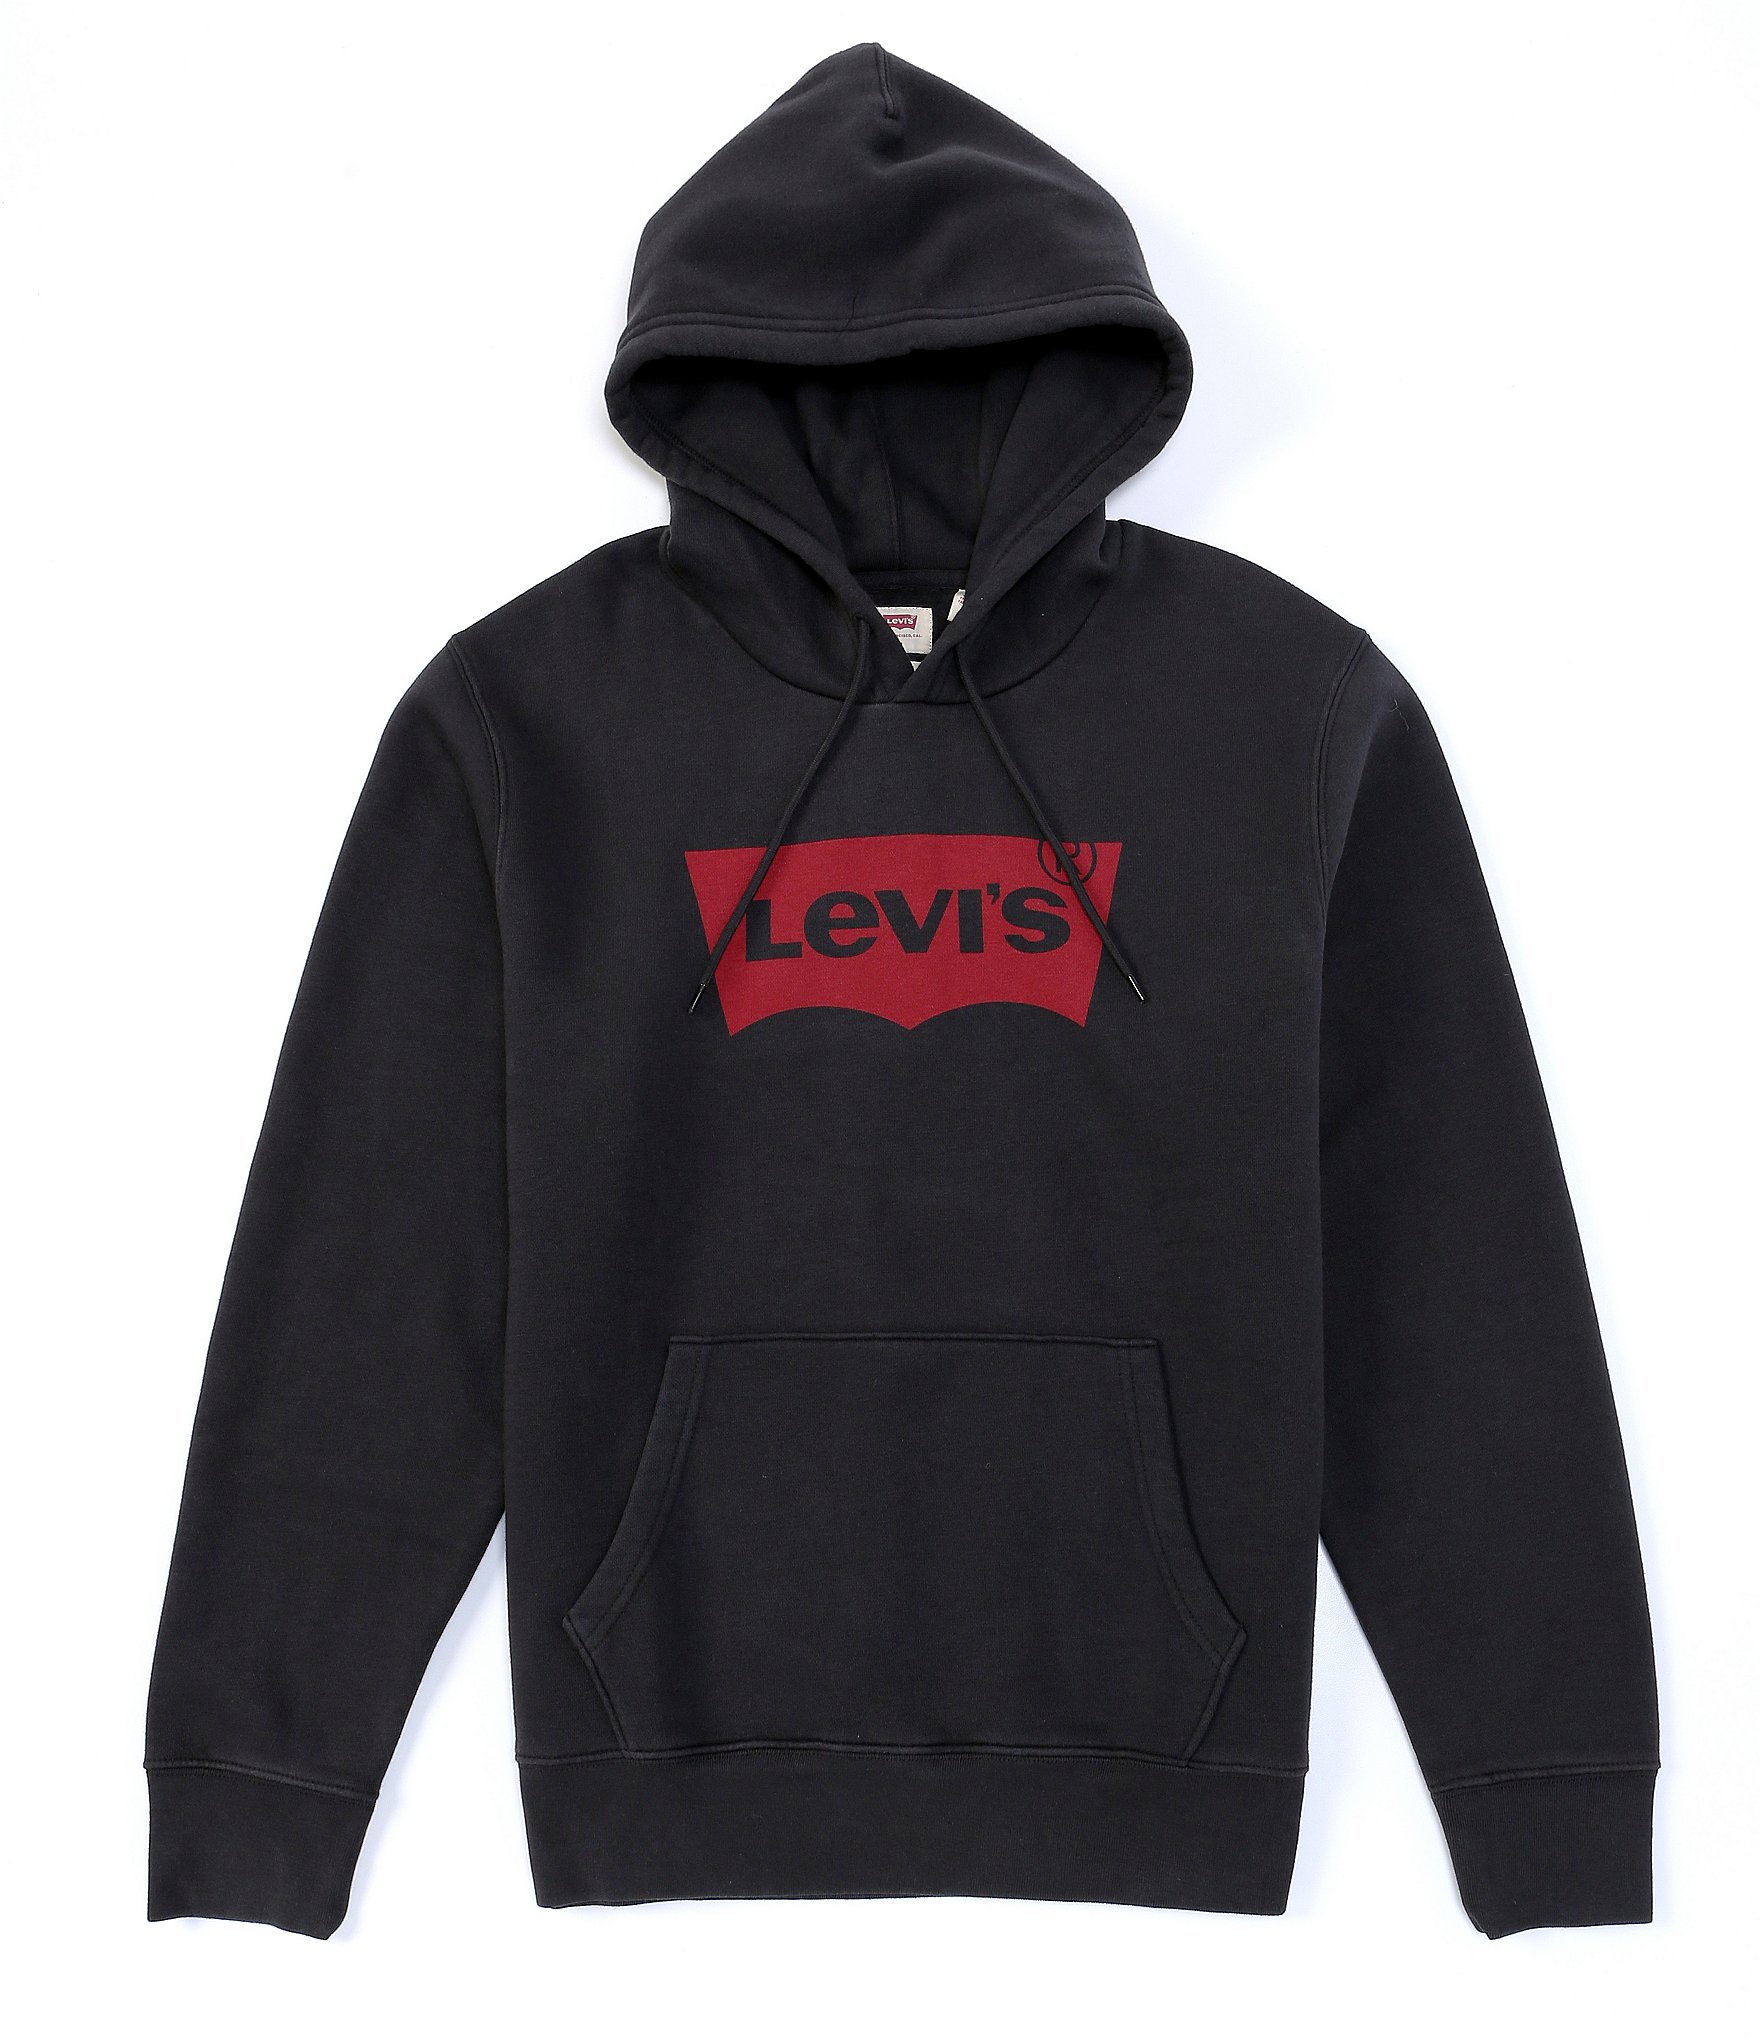 Worden Dag litteken Levi's Men's Hoodies & Sweatshirts | Dillard's